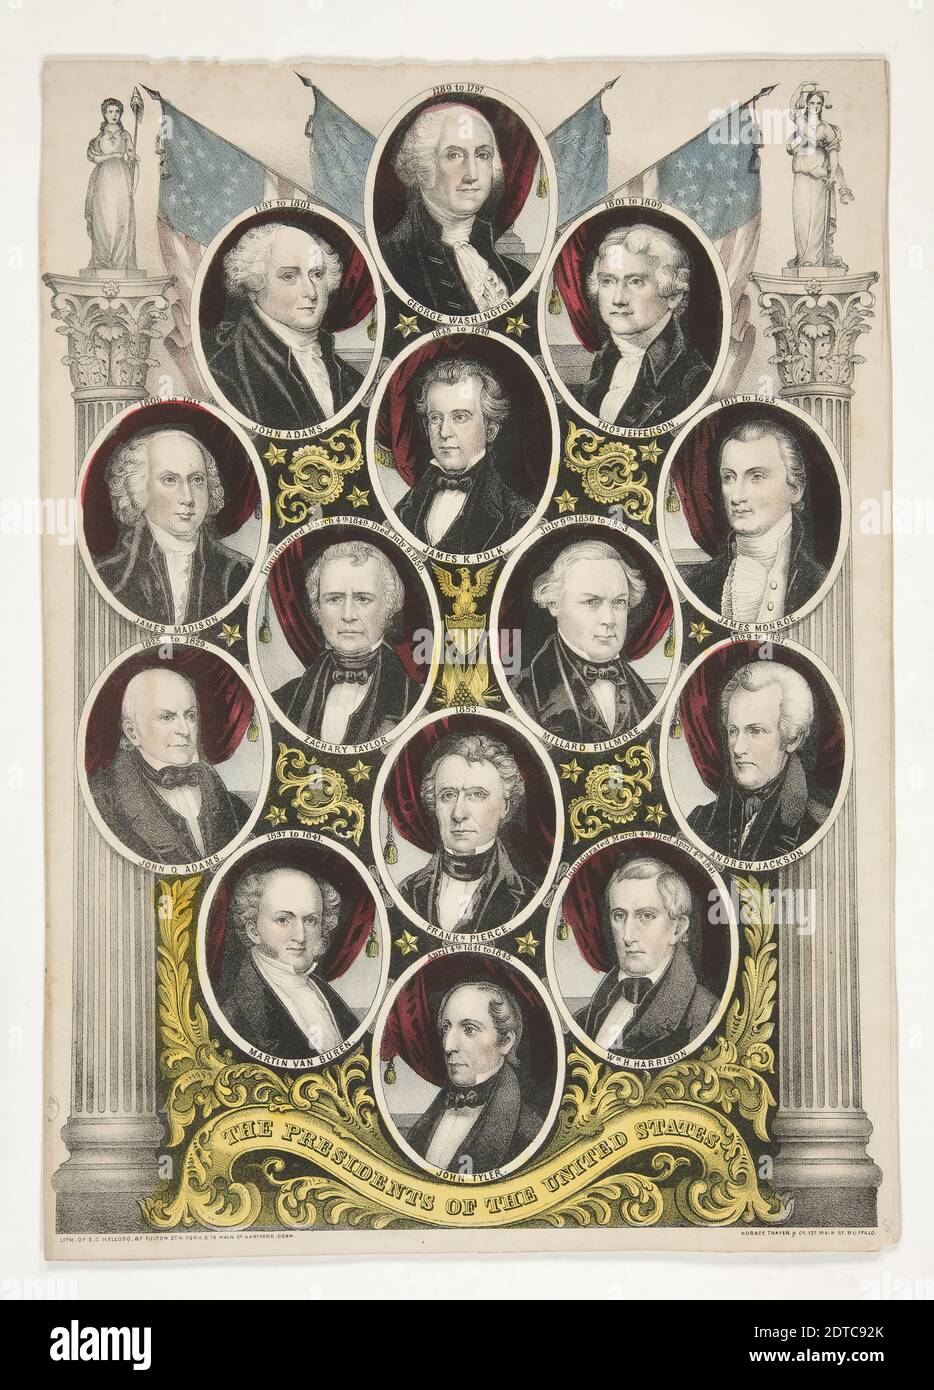 Artiste: Elijah C. Kellogg, américain, 1811–1881, les Présidents des États-Unis, lithographie couleur, image: 13 1/2 × 9 1/4 po. (34.3 × 23.5 cm), fabriqué aux Etats-Unis, américain, 19e siècle, Works on Paper - Prints Banque D'Images